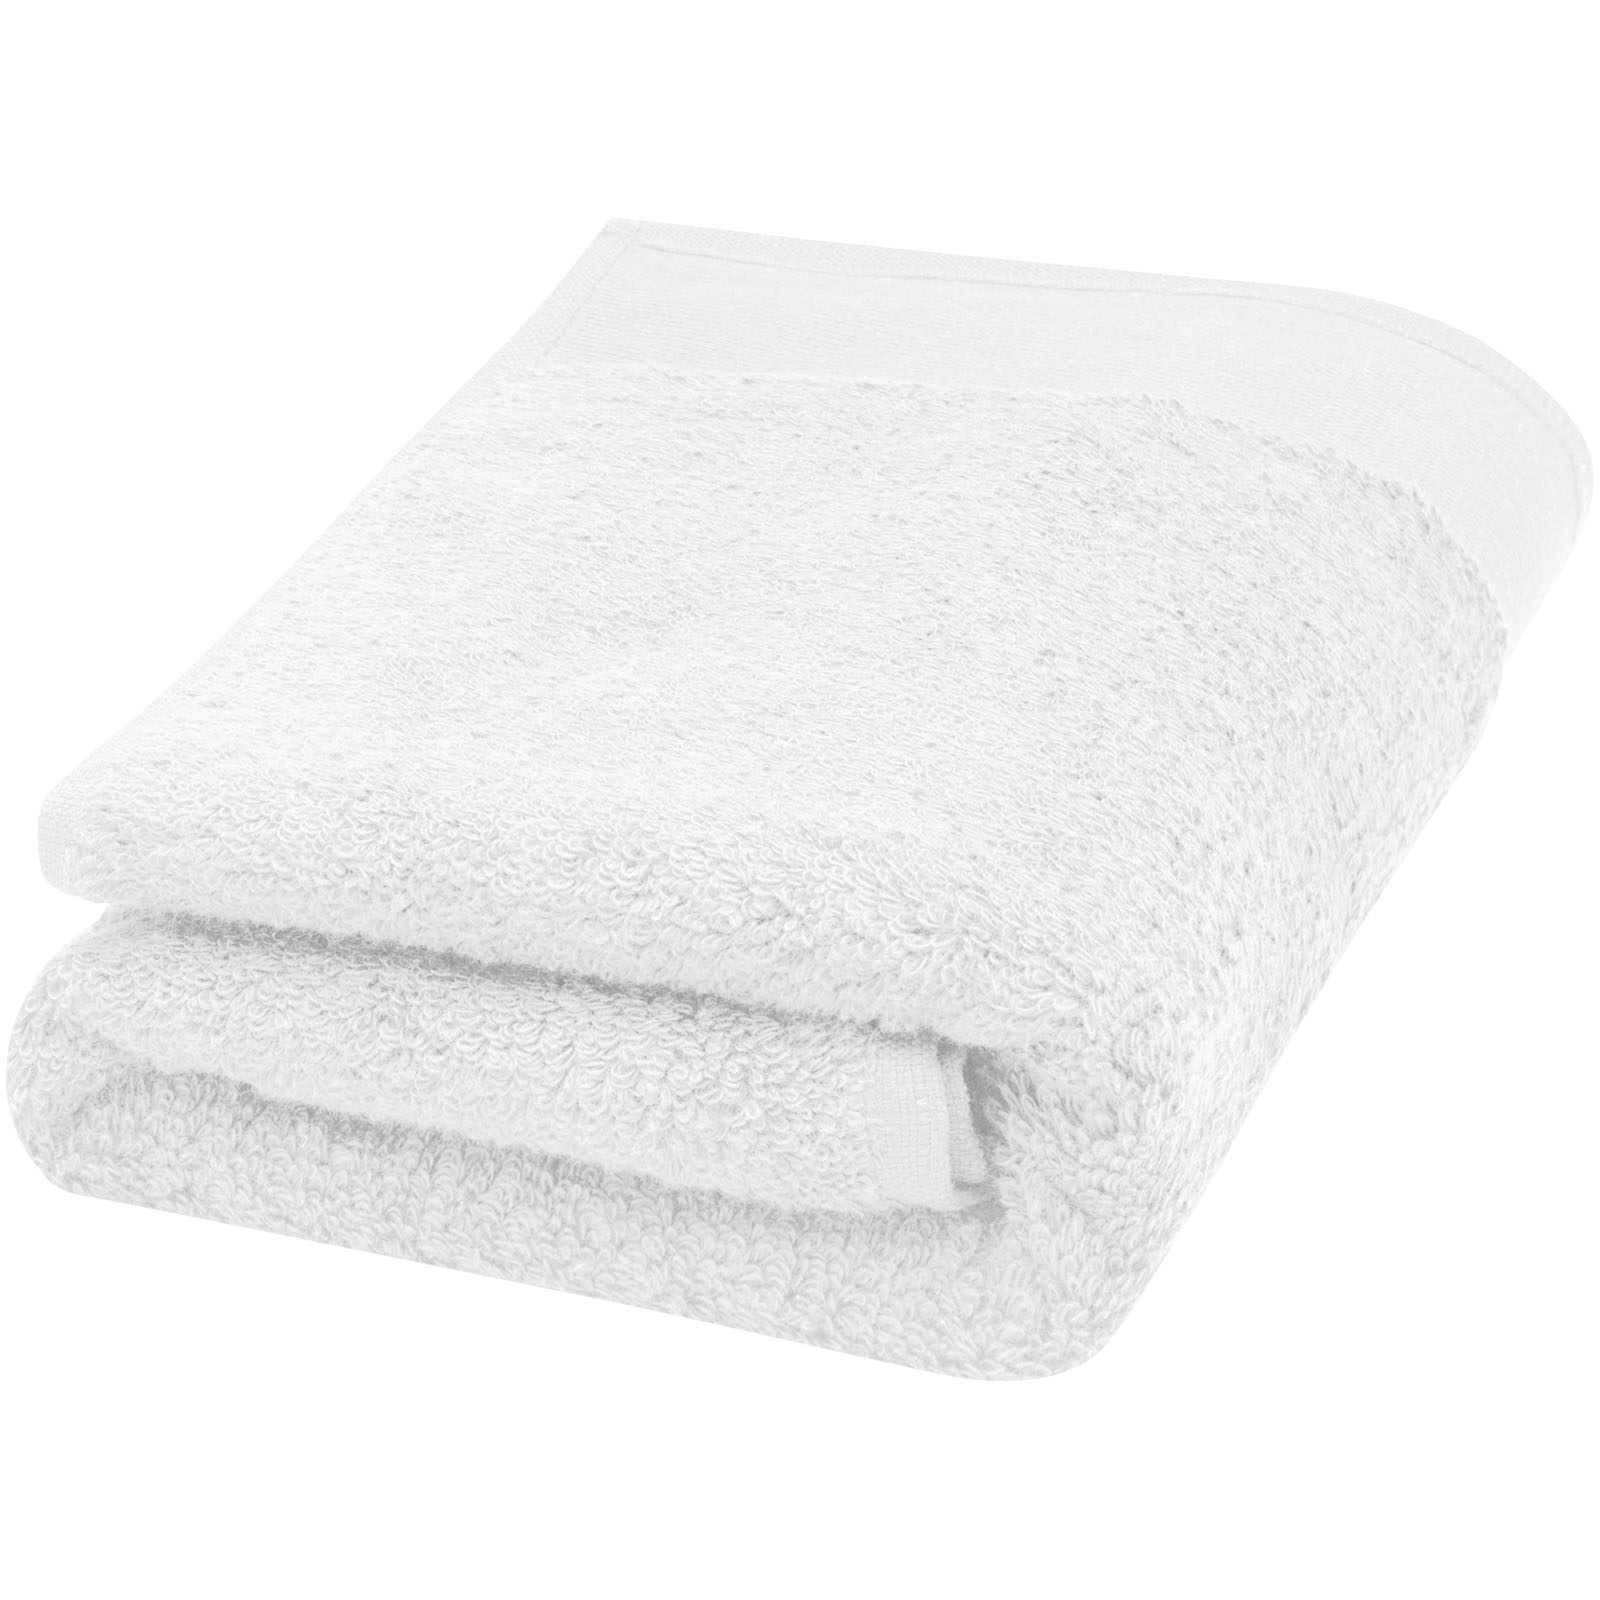 Towels - Nora 550 g/m² cotton towel 50x100 cm